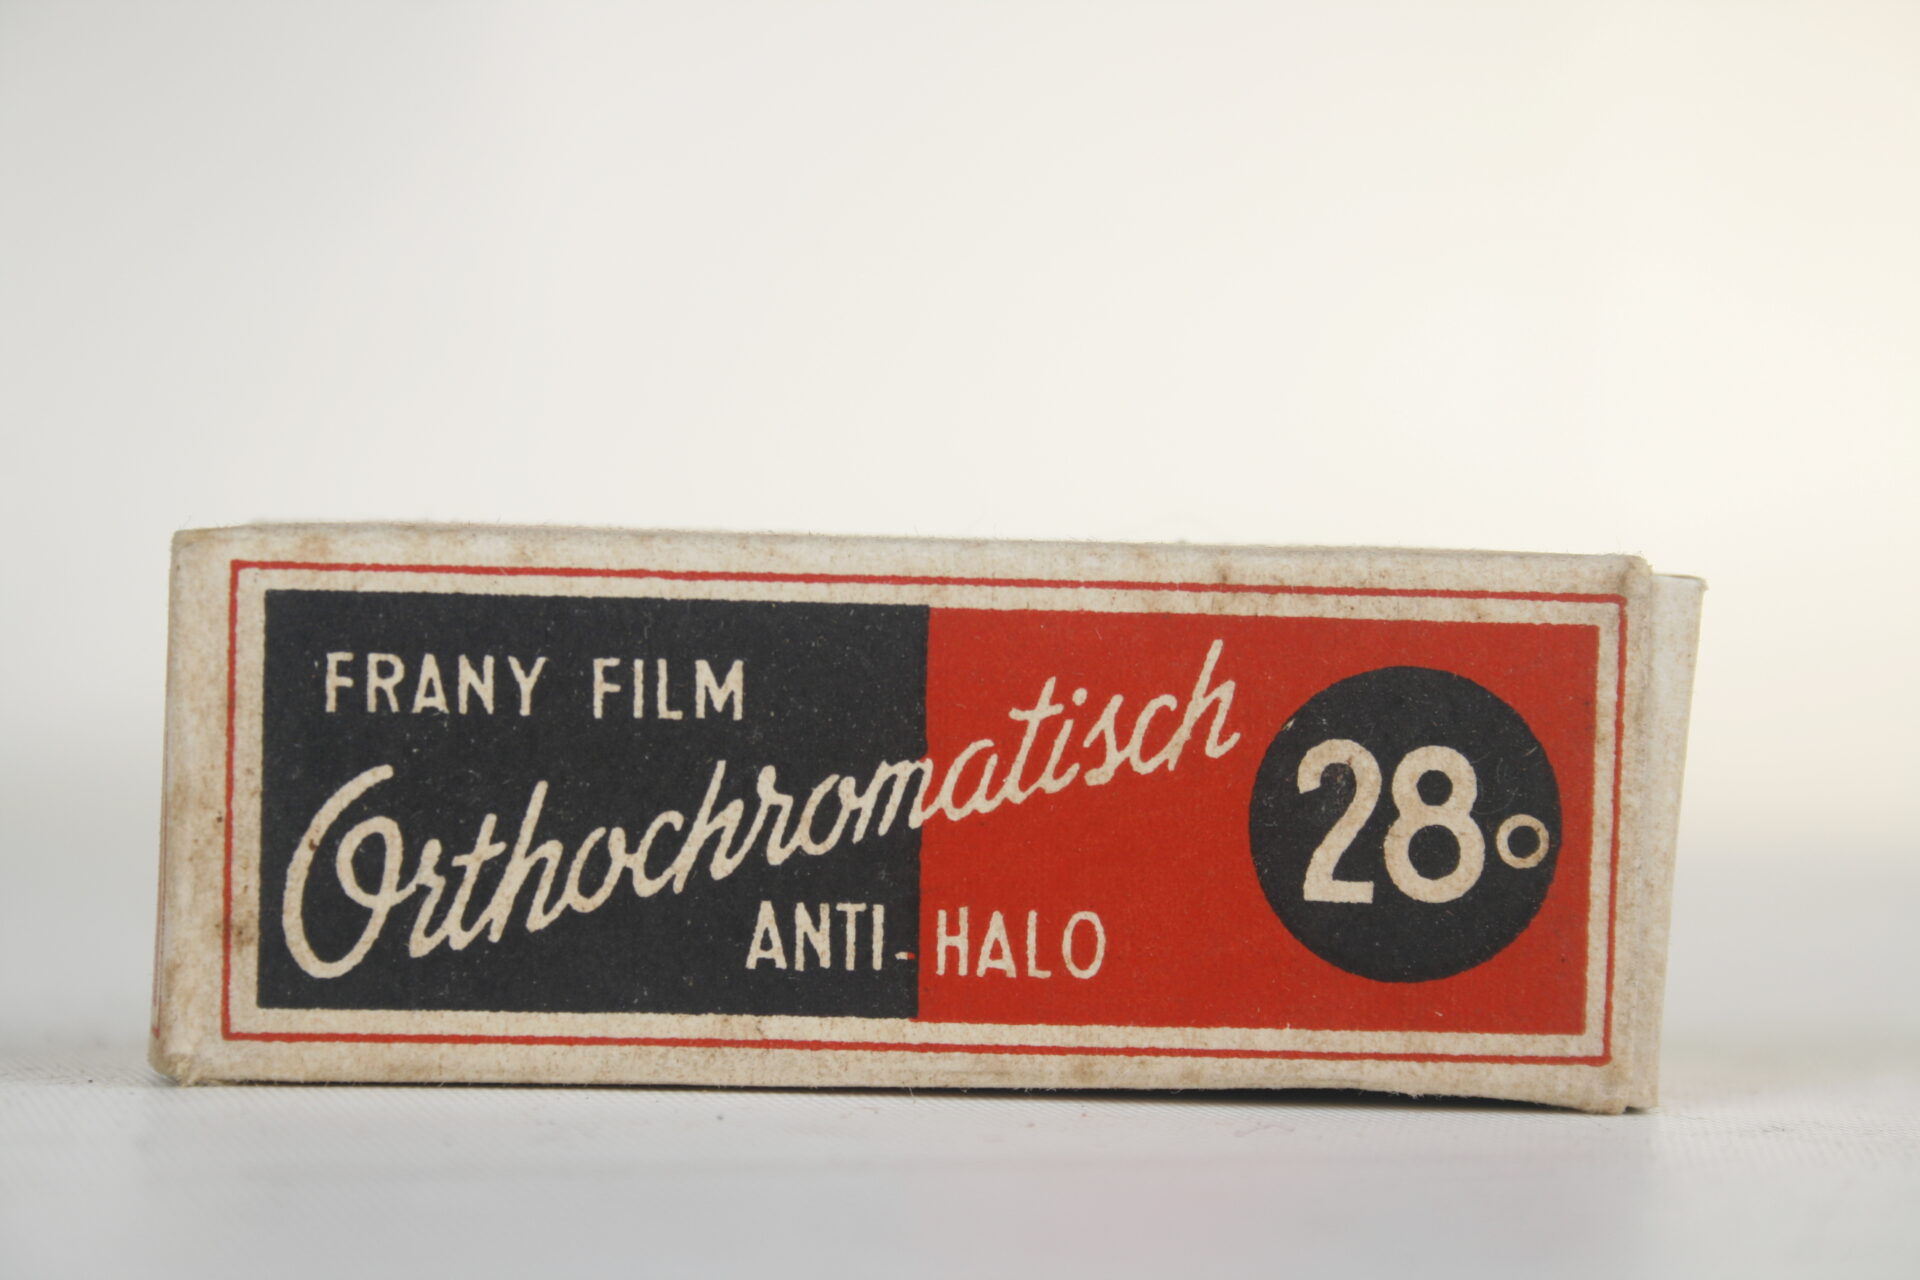 Frany film. Orthochromatisch anti-halo film